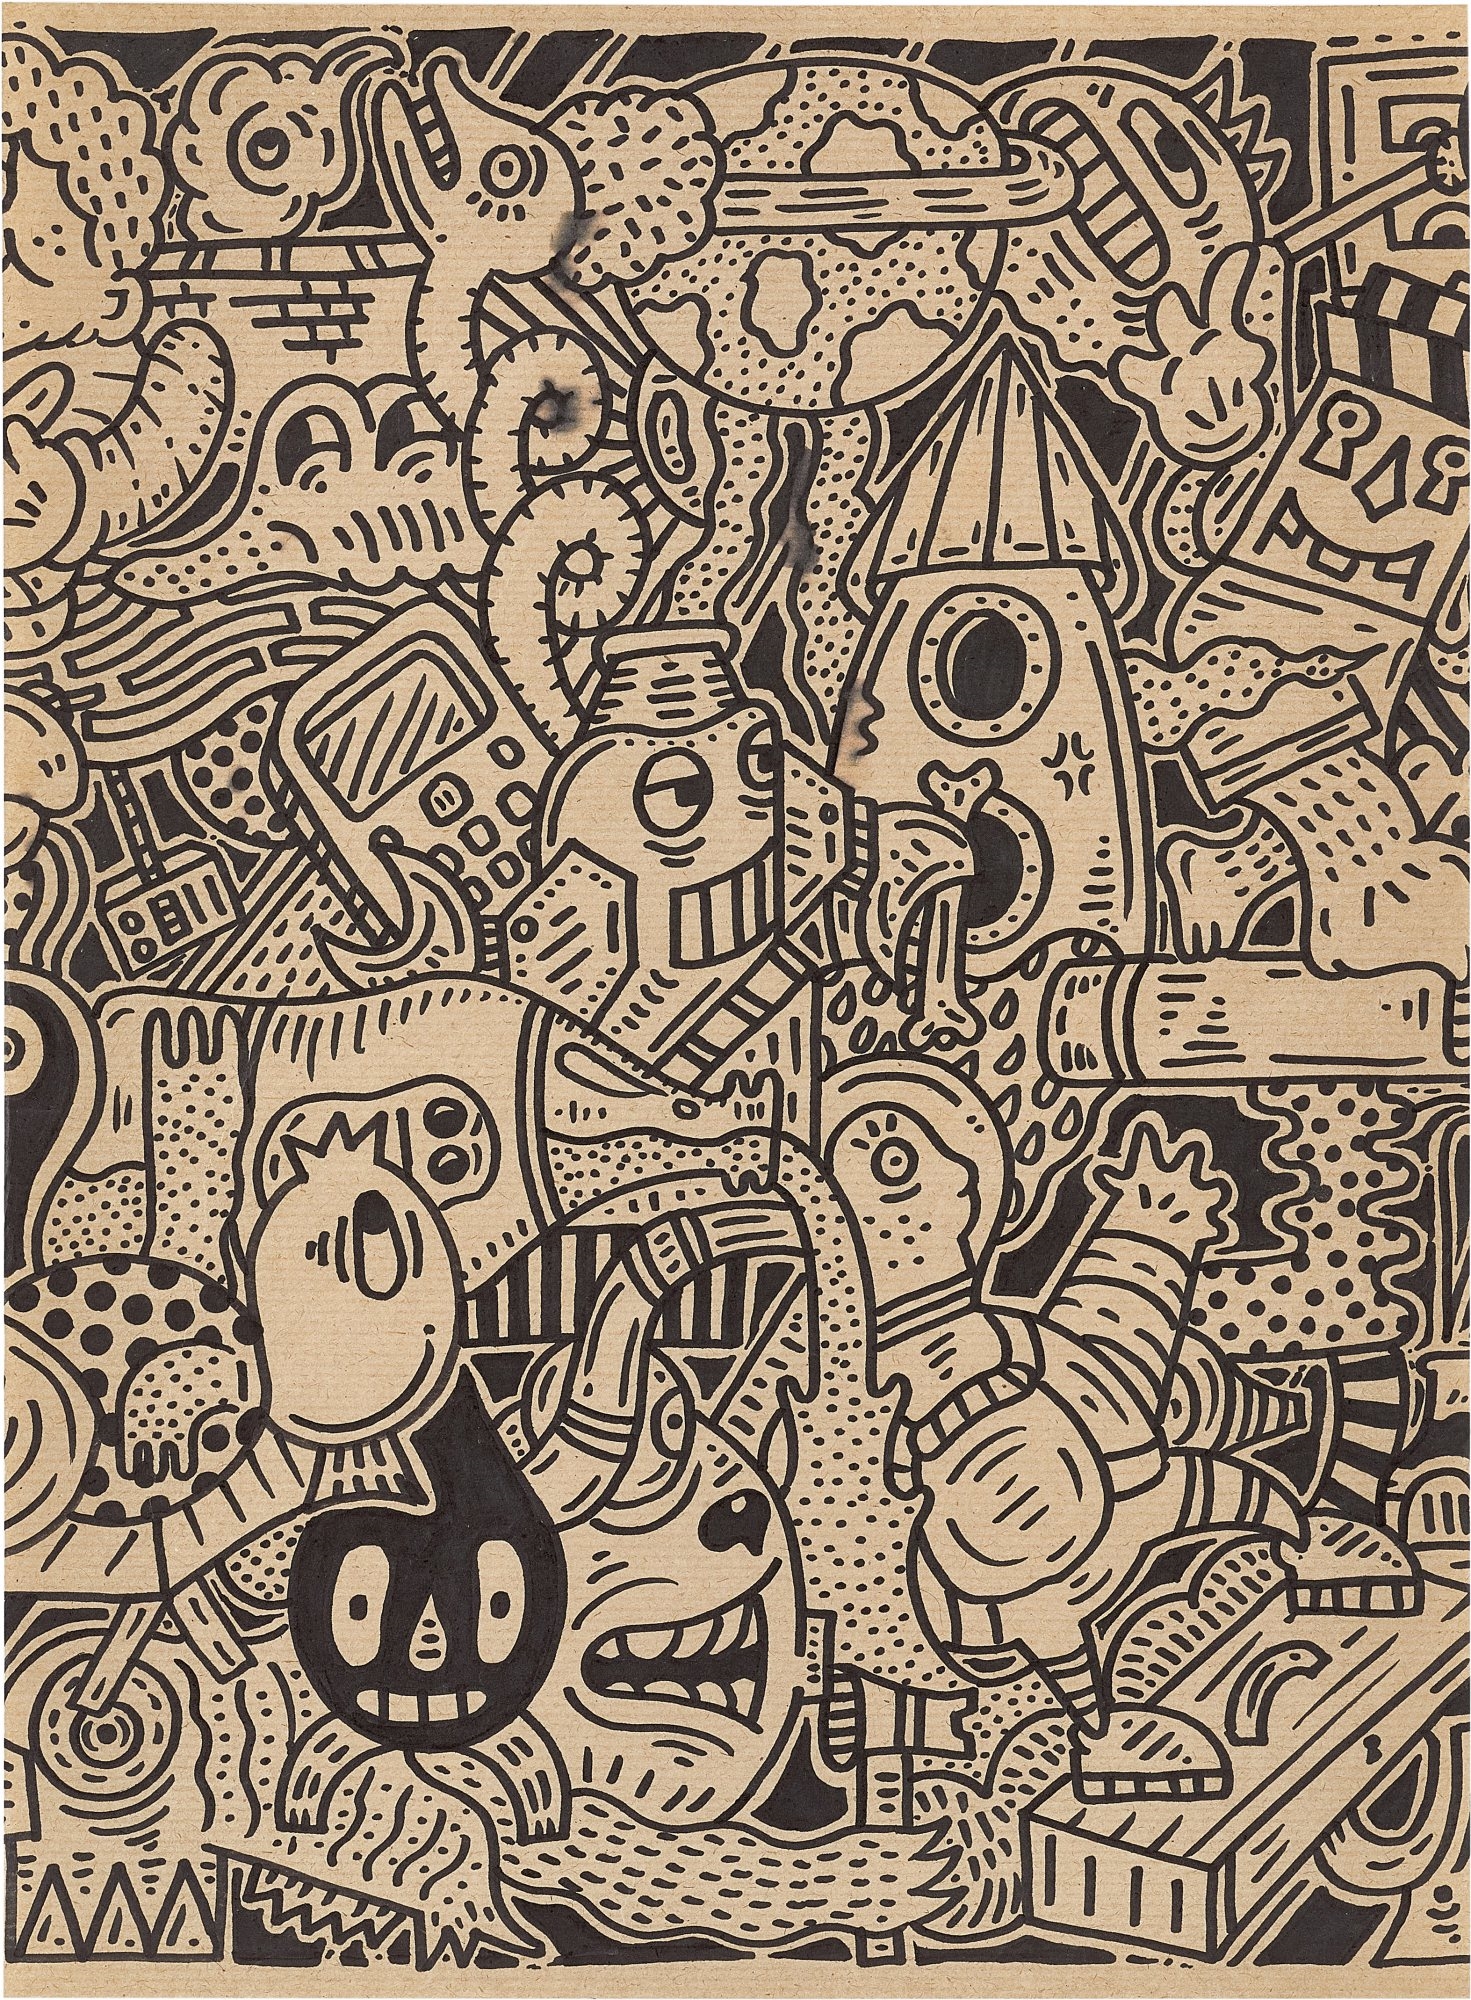 Mr. Doodle | Untitled (2013) | MutualArt